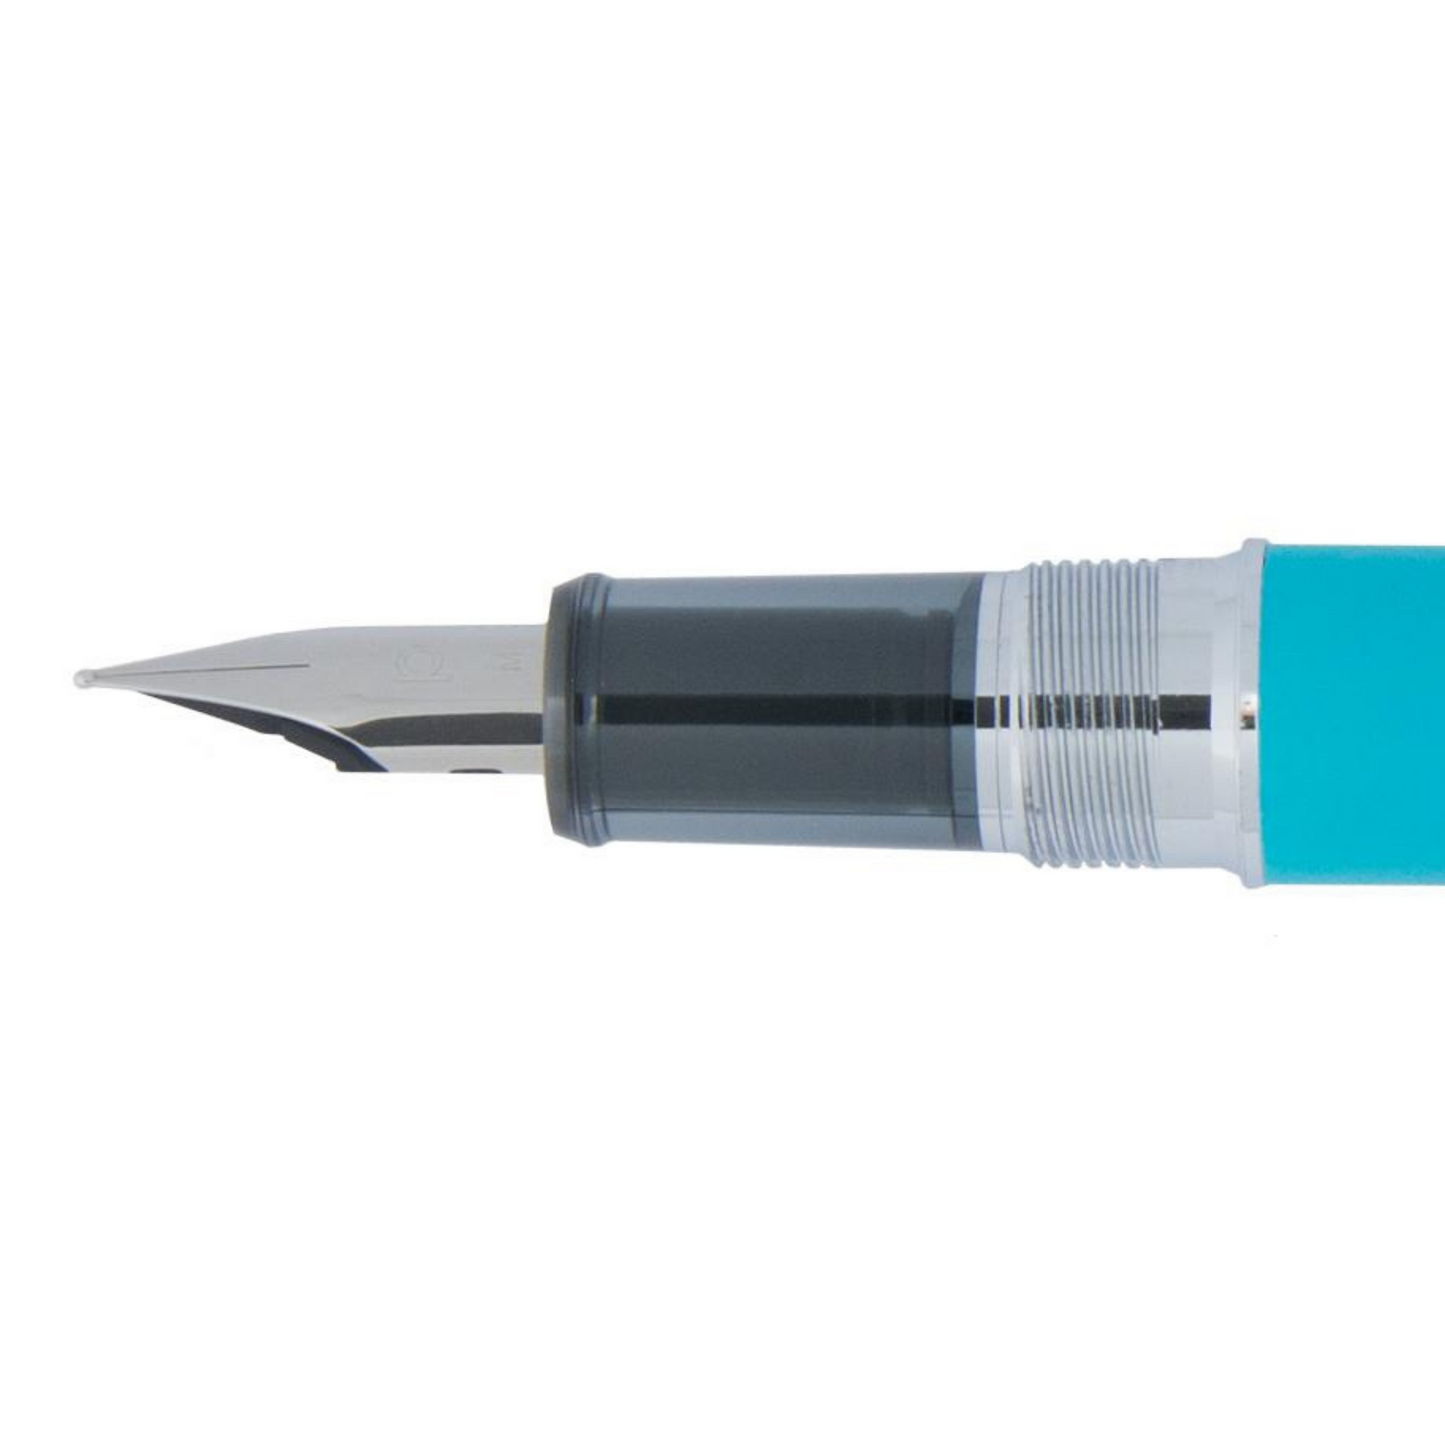 Platinum Procyon Fountain Pen - Turquoise Blue